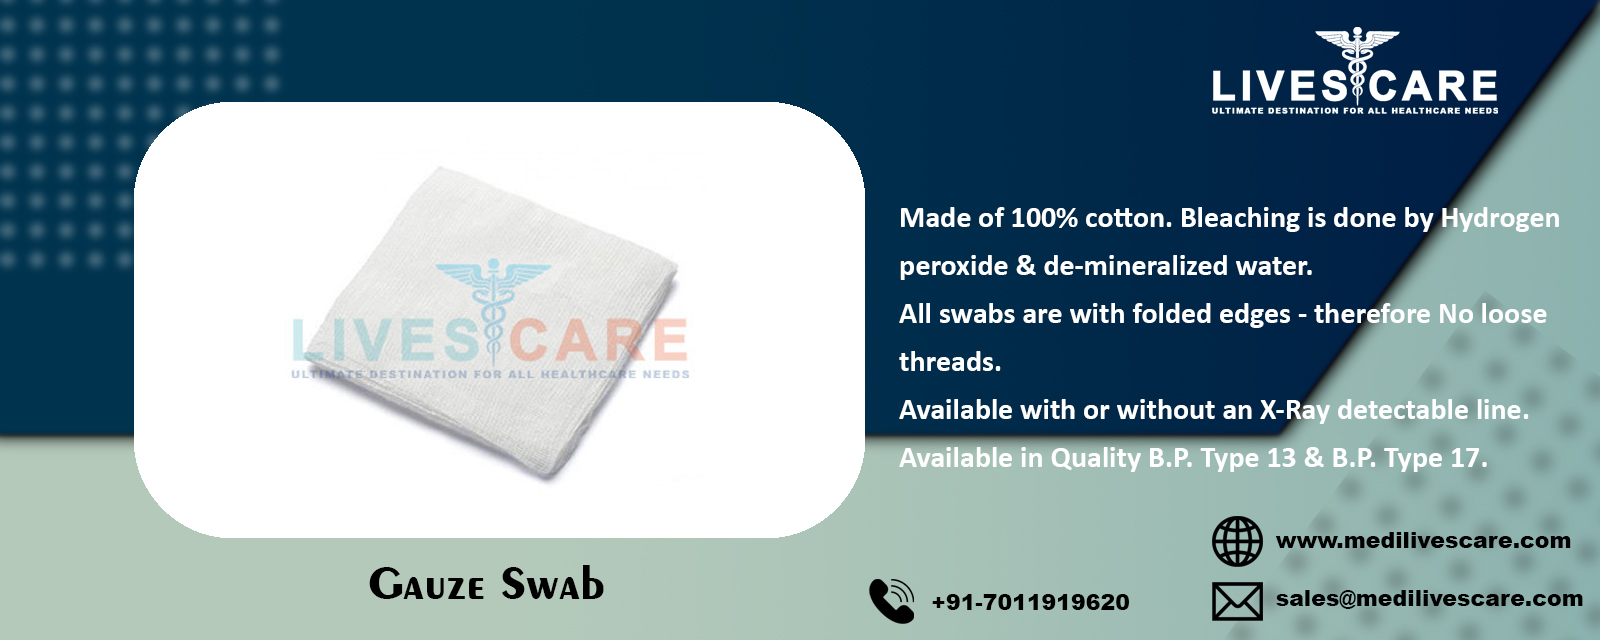 Gauze Swab
Gauze Swab Manufacturers
Gauze Swab Manufacturers in India
Gauze Swab Exporters in India
Gauze Swab Suppliers in India